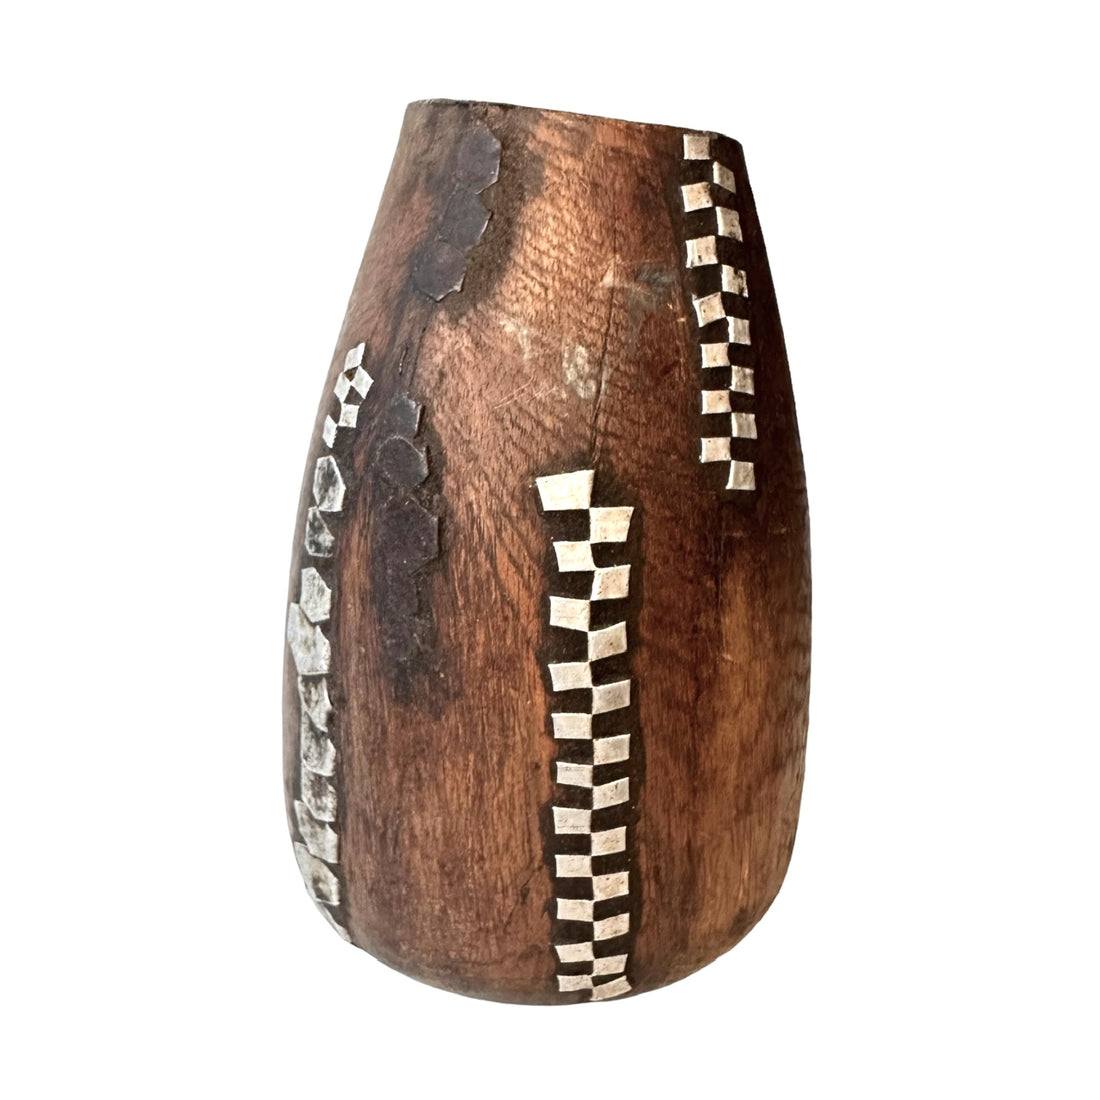 New - Tutsi Wooden Vases - Rwanda (M/M) - eyahomeliving